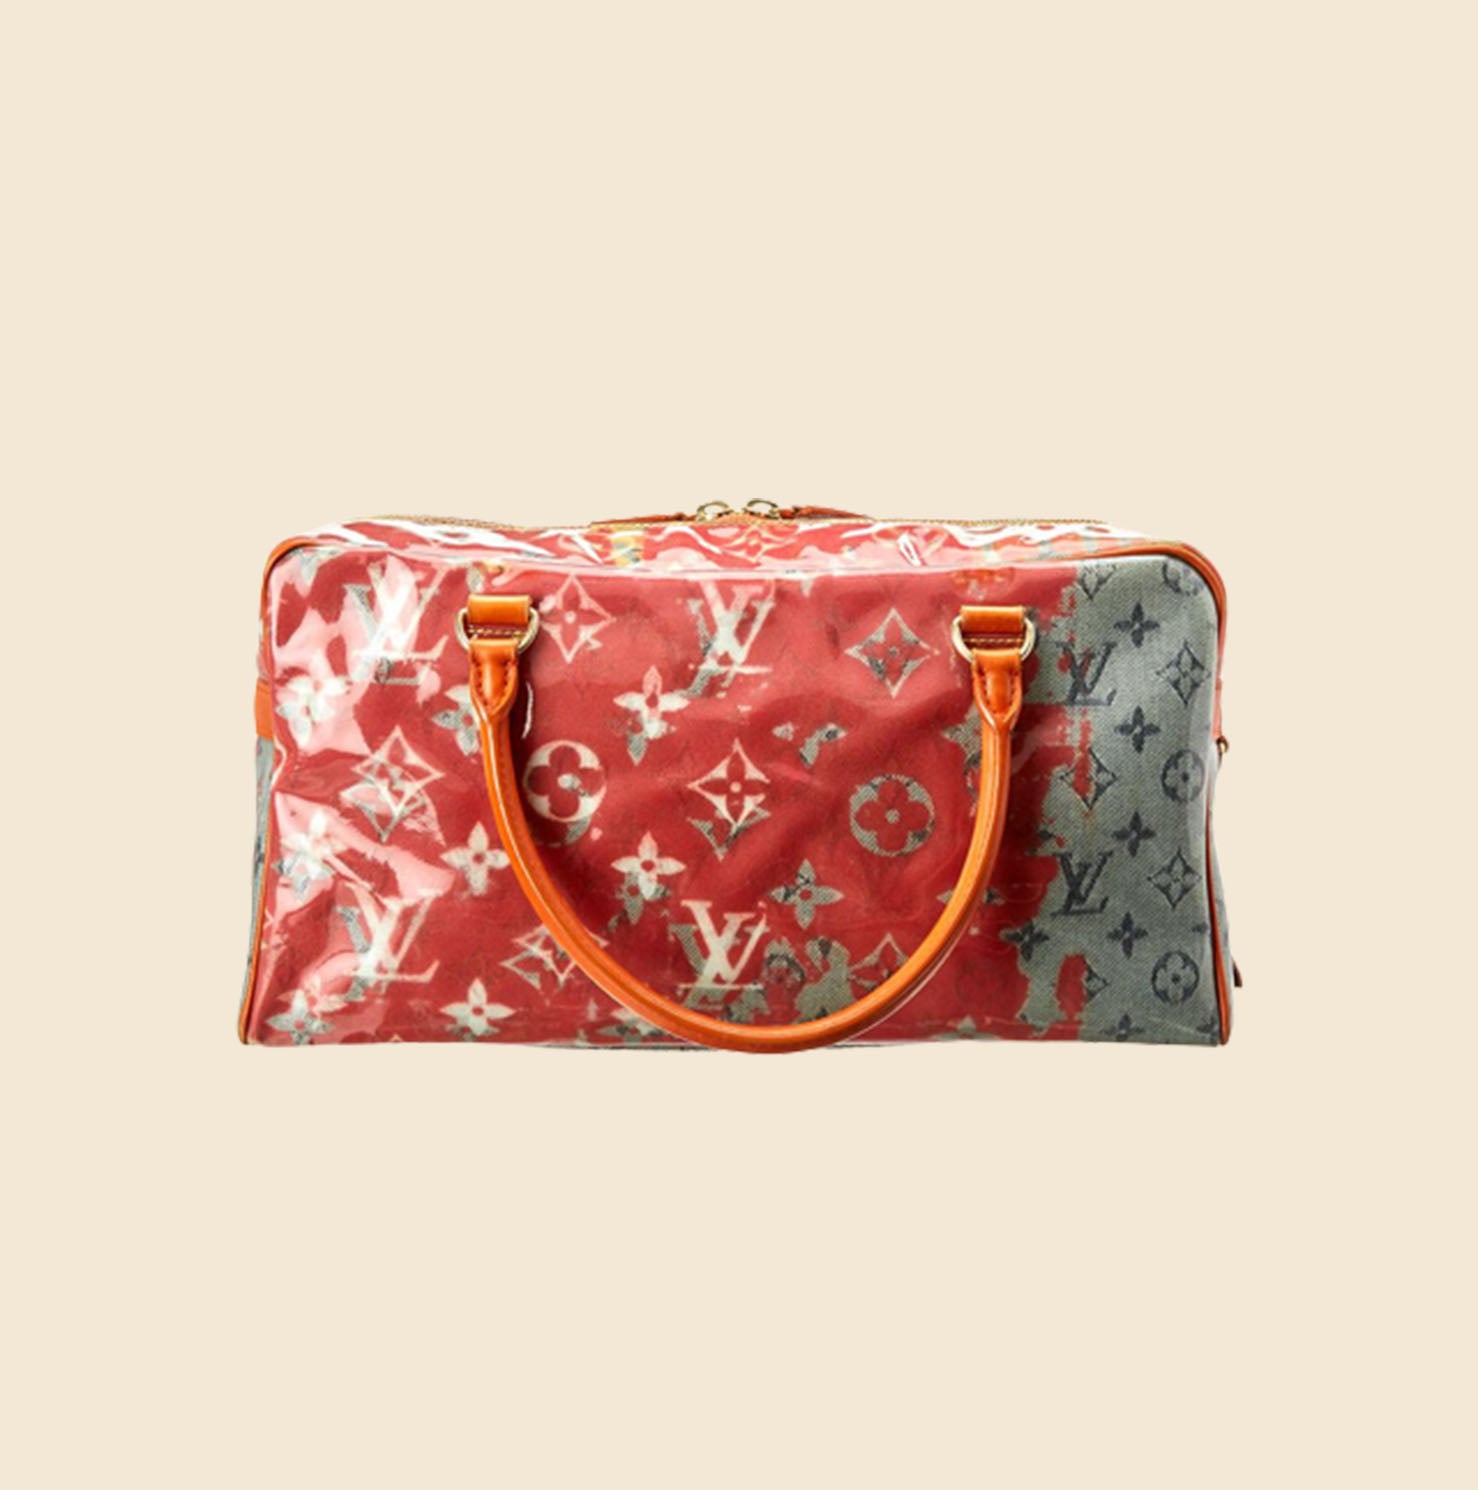 Louis Vuitton Travel Richard Prince Pink Denim Weekender Pm Bag